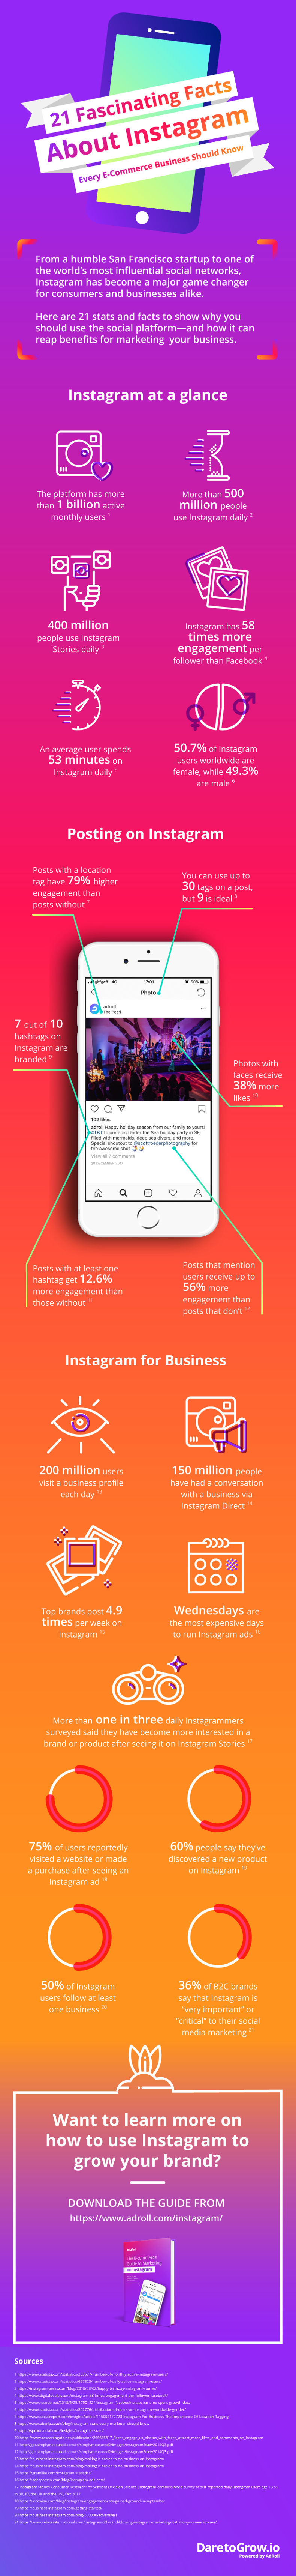 statistieken instagram infographic